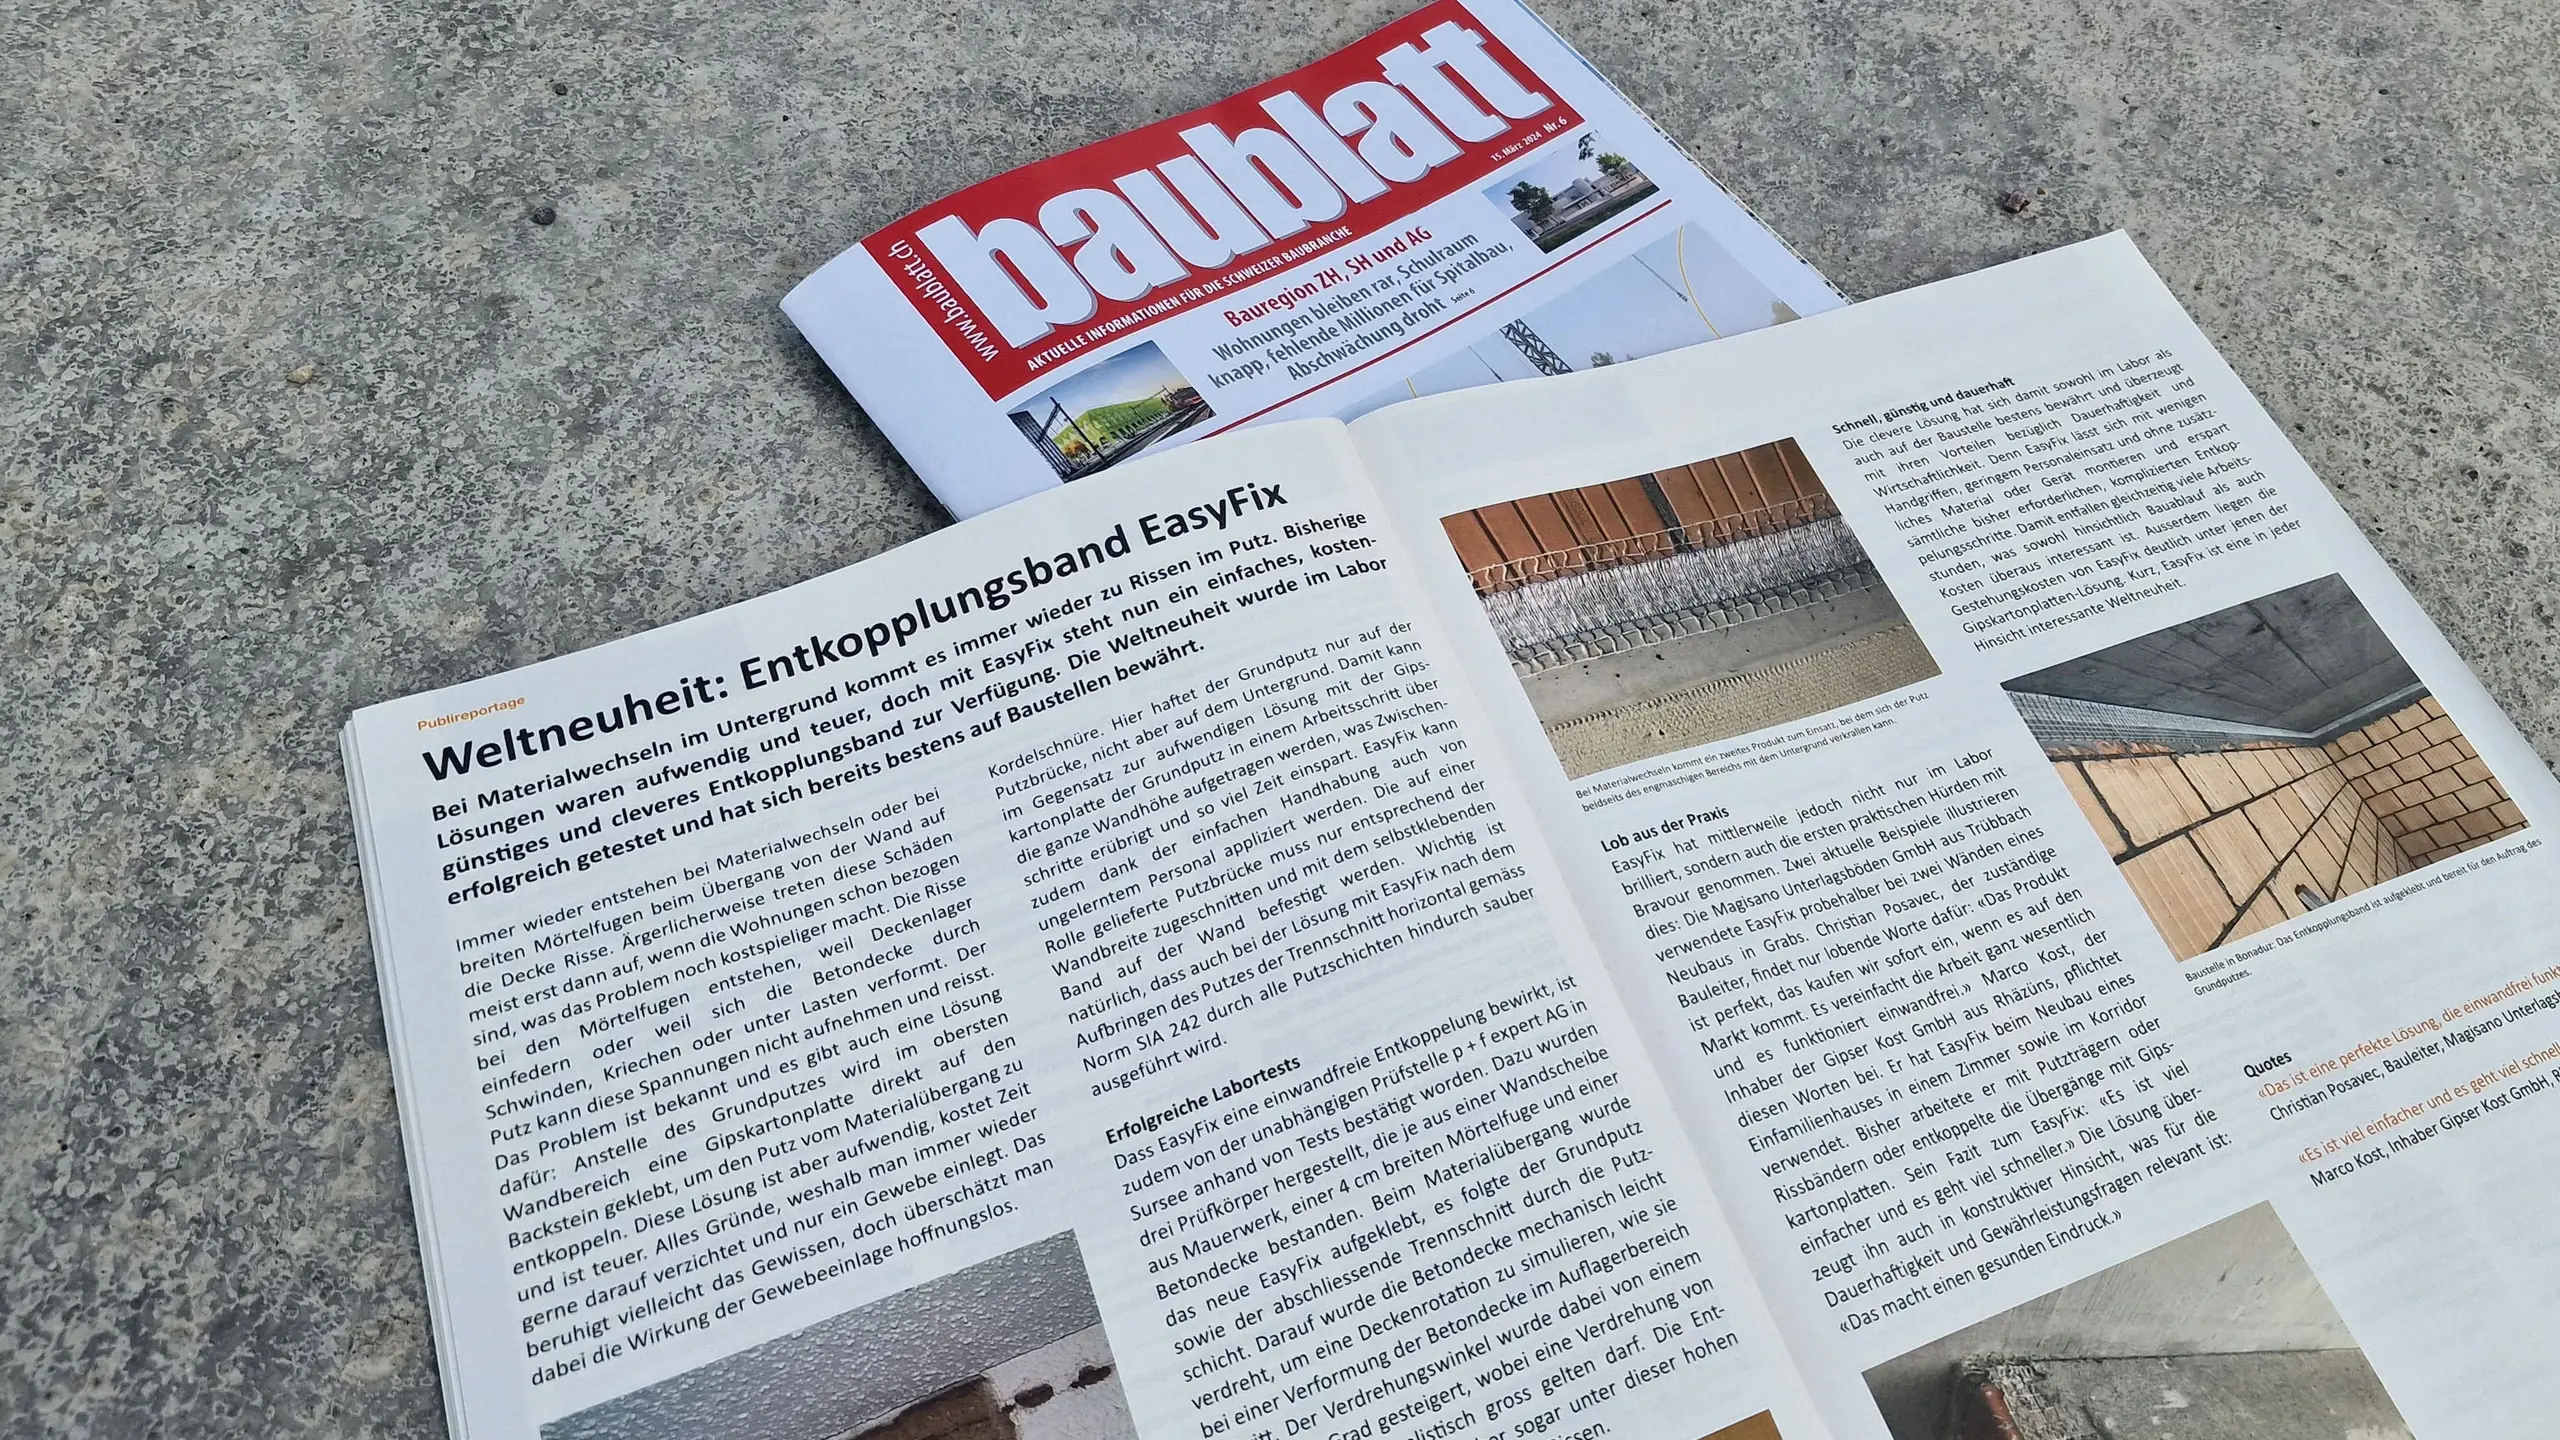 Titelblatt des Magazins "Baublatt" mit dem aufgeschlagenen Artikel zur Weltneuheit Stucanet® Easy Fix Entkopplungsband